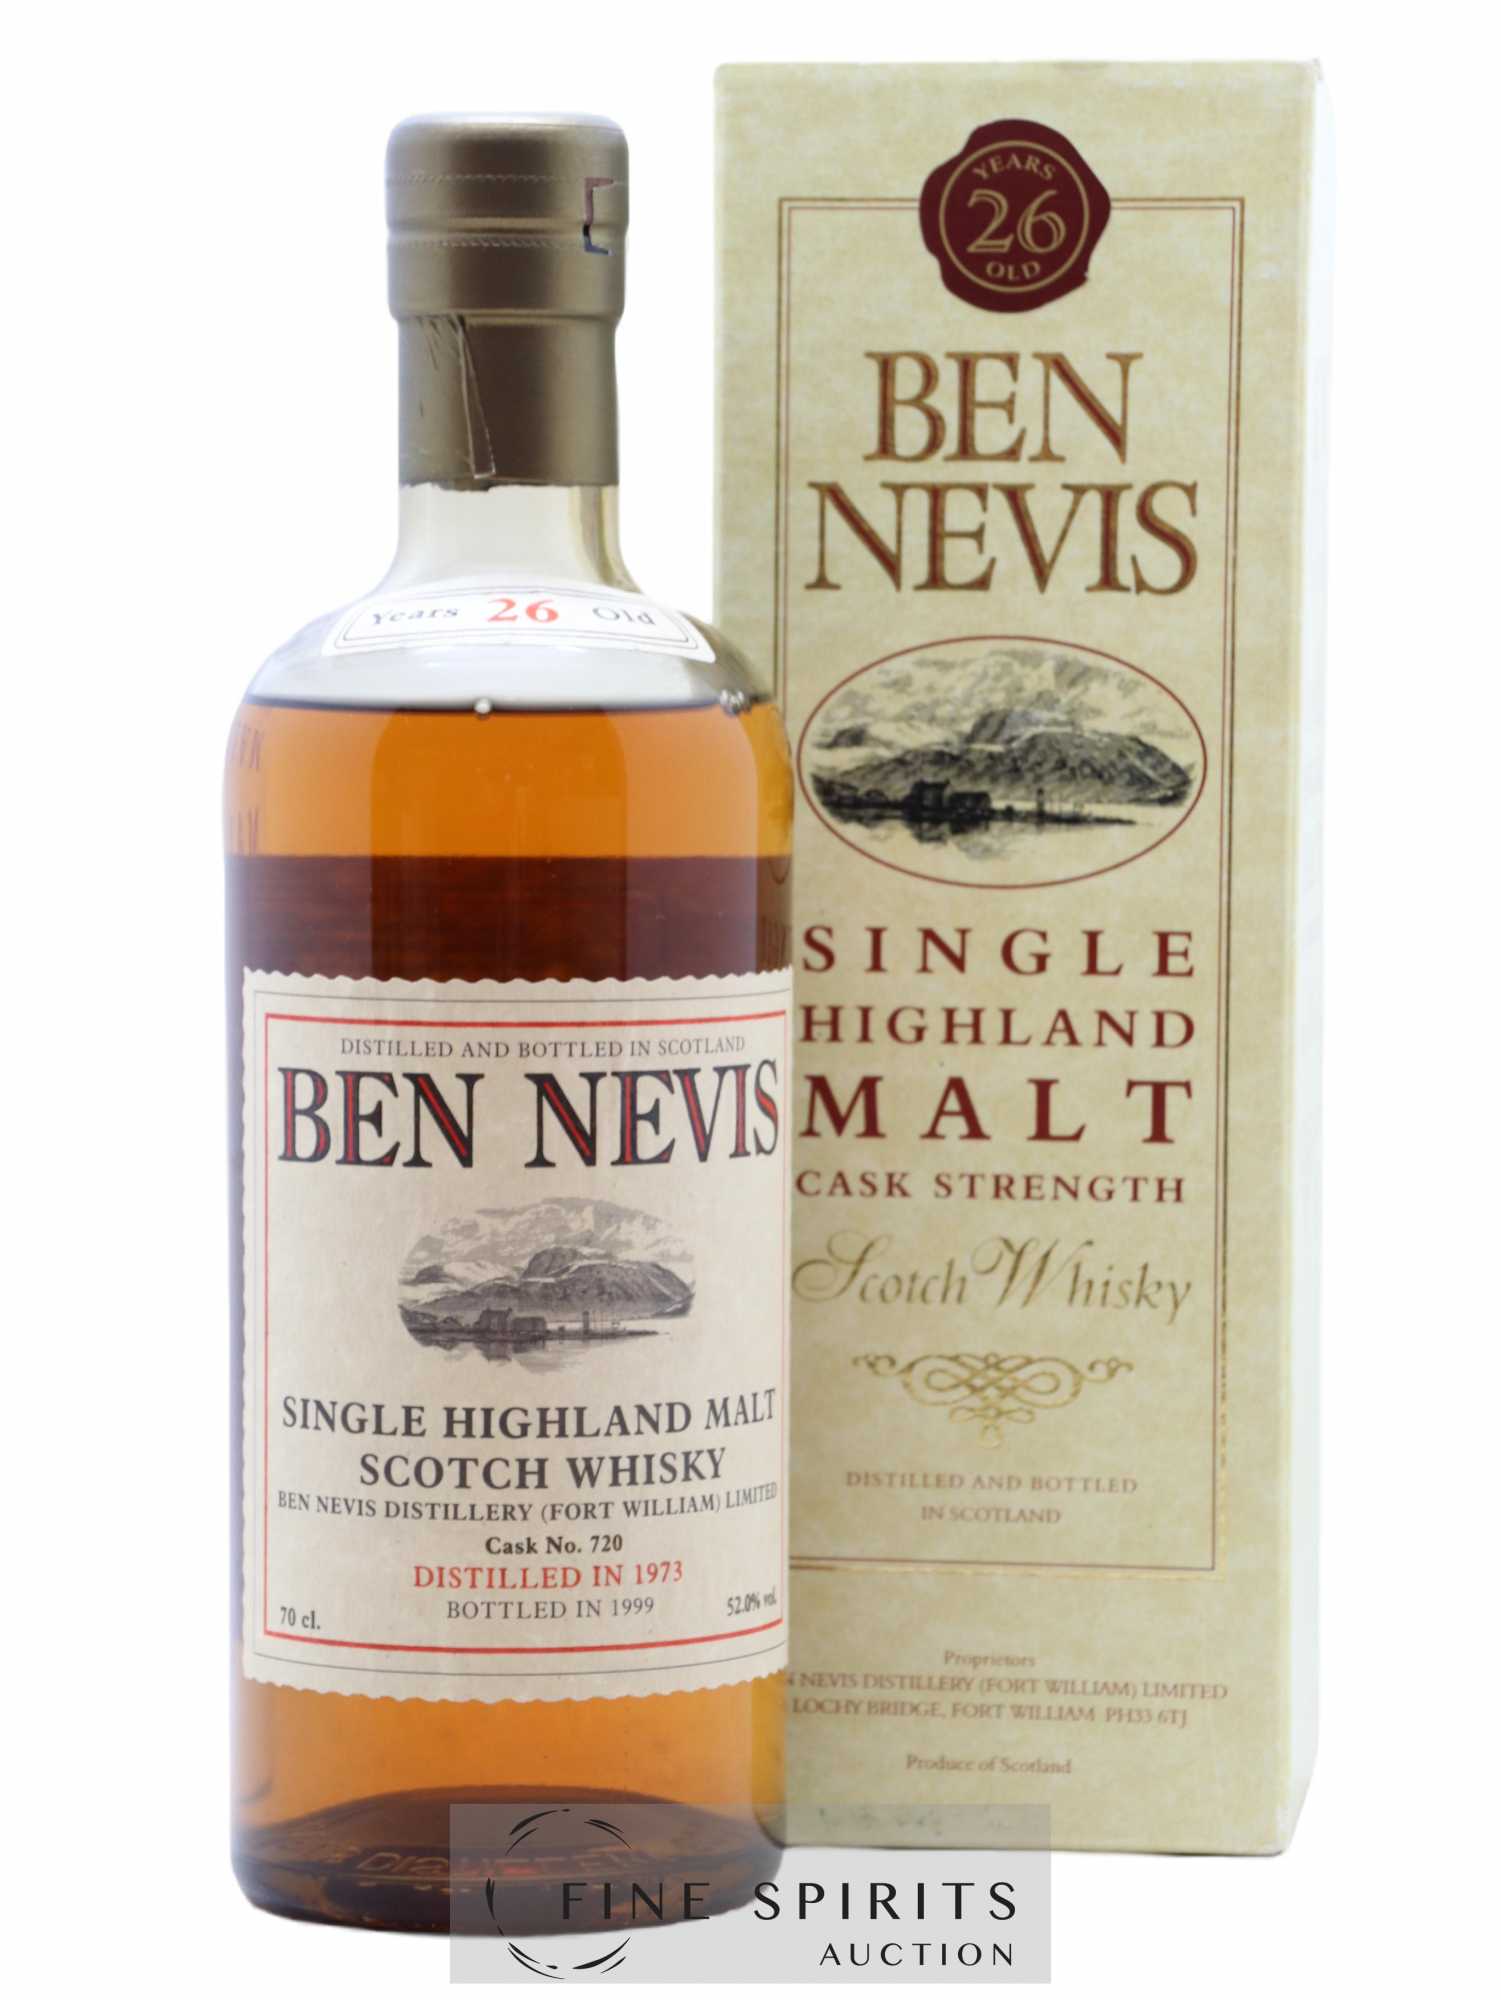 Ben Nevis 26 years 1973 Of. Cask n°720 - bottled 1999 